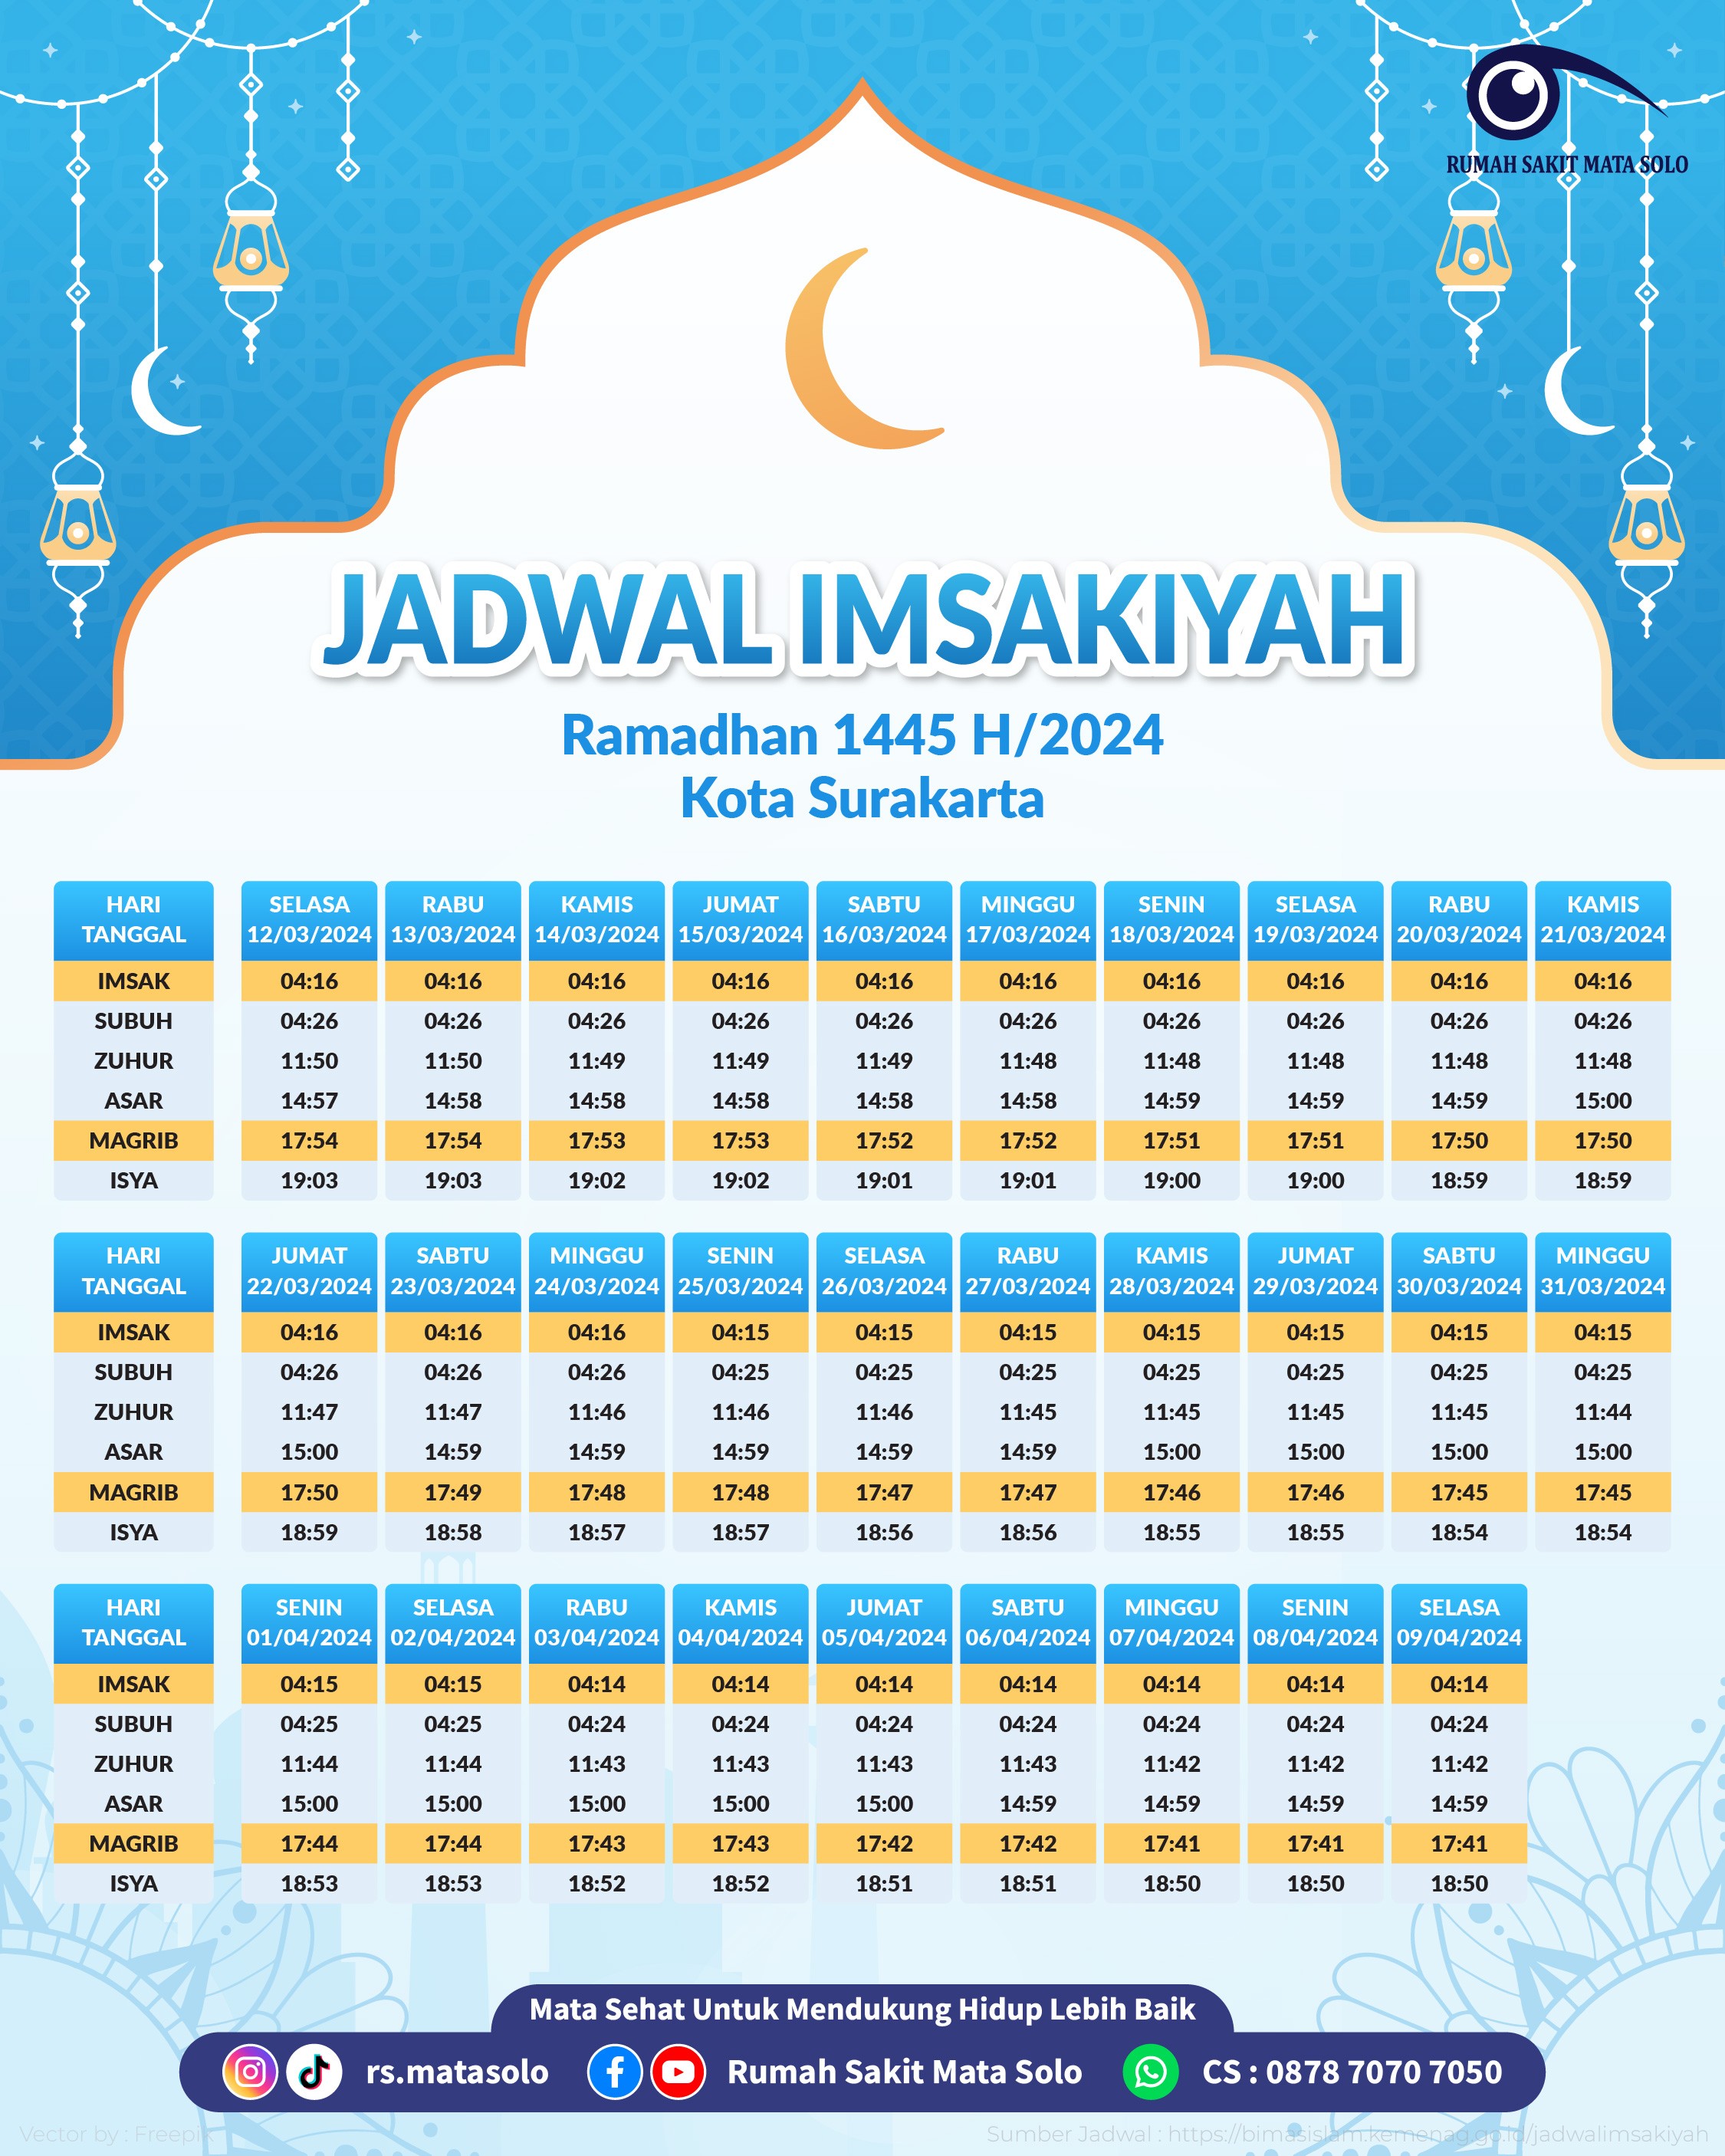 Selamat Menunaikan Ibadah Puasa Ramadhan 1445 H/2024